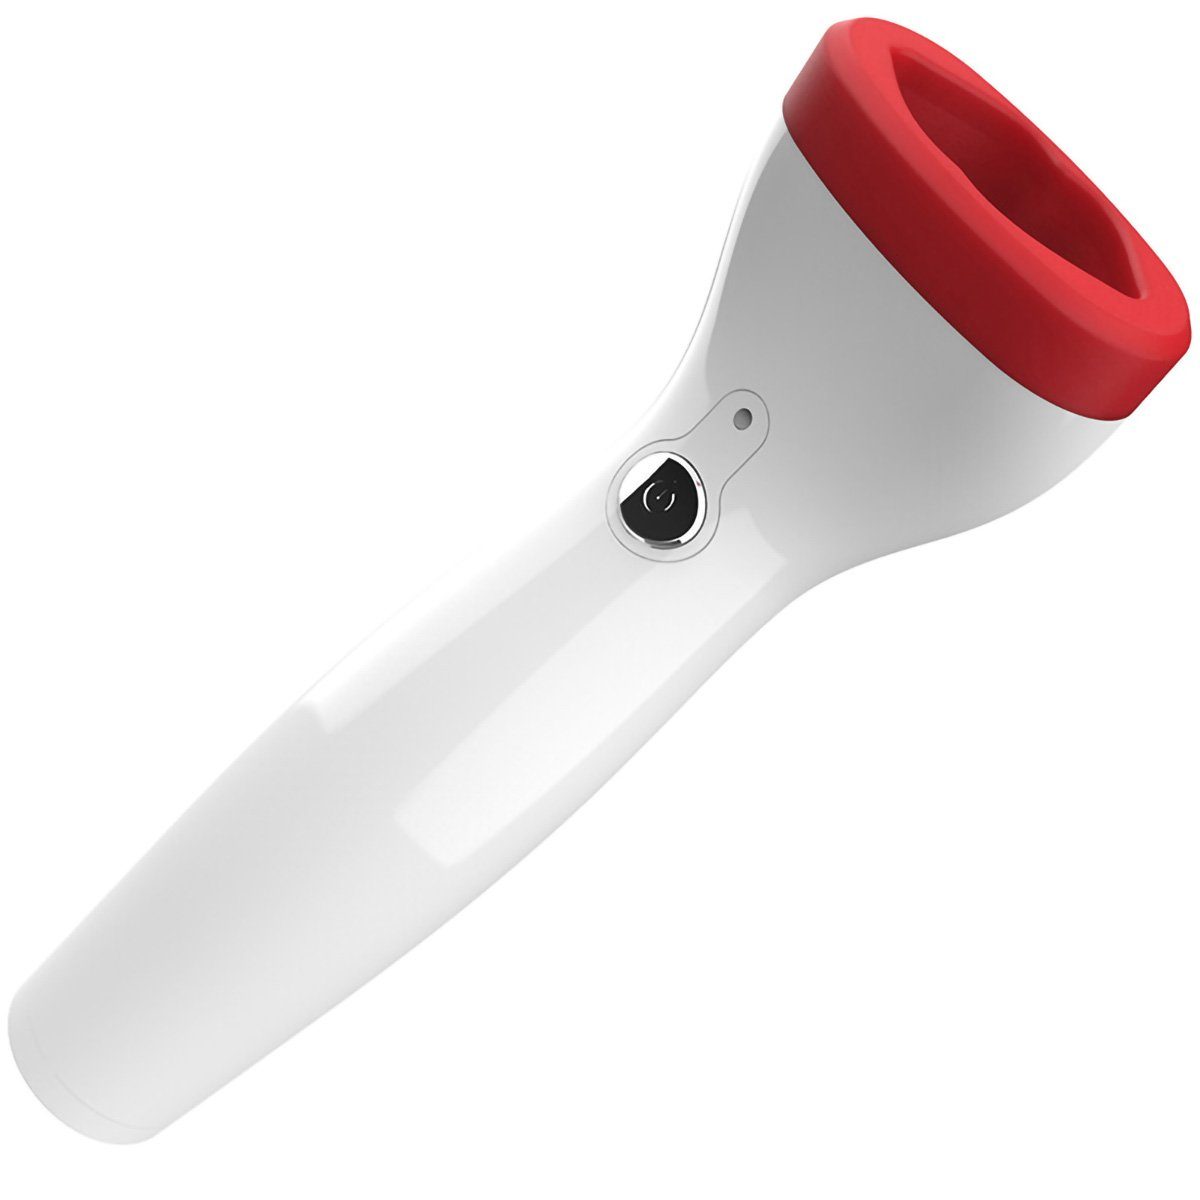 yozhiqu Lip-Booster Wiederaufladbarer elektrischer Lippen-Plumper-Natürlich,USB-aufladbar, Nutzen Sie die sanfte Saugkraft für volle, pralle Lippen.